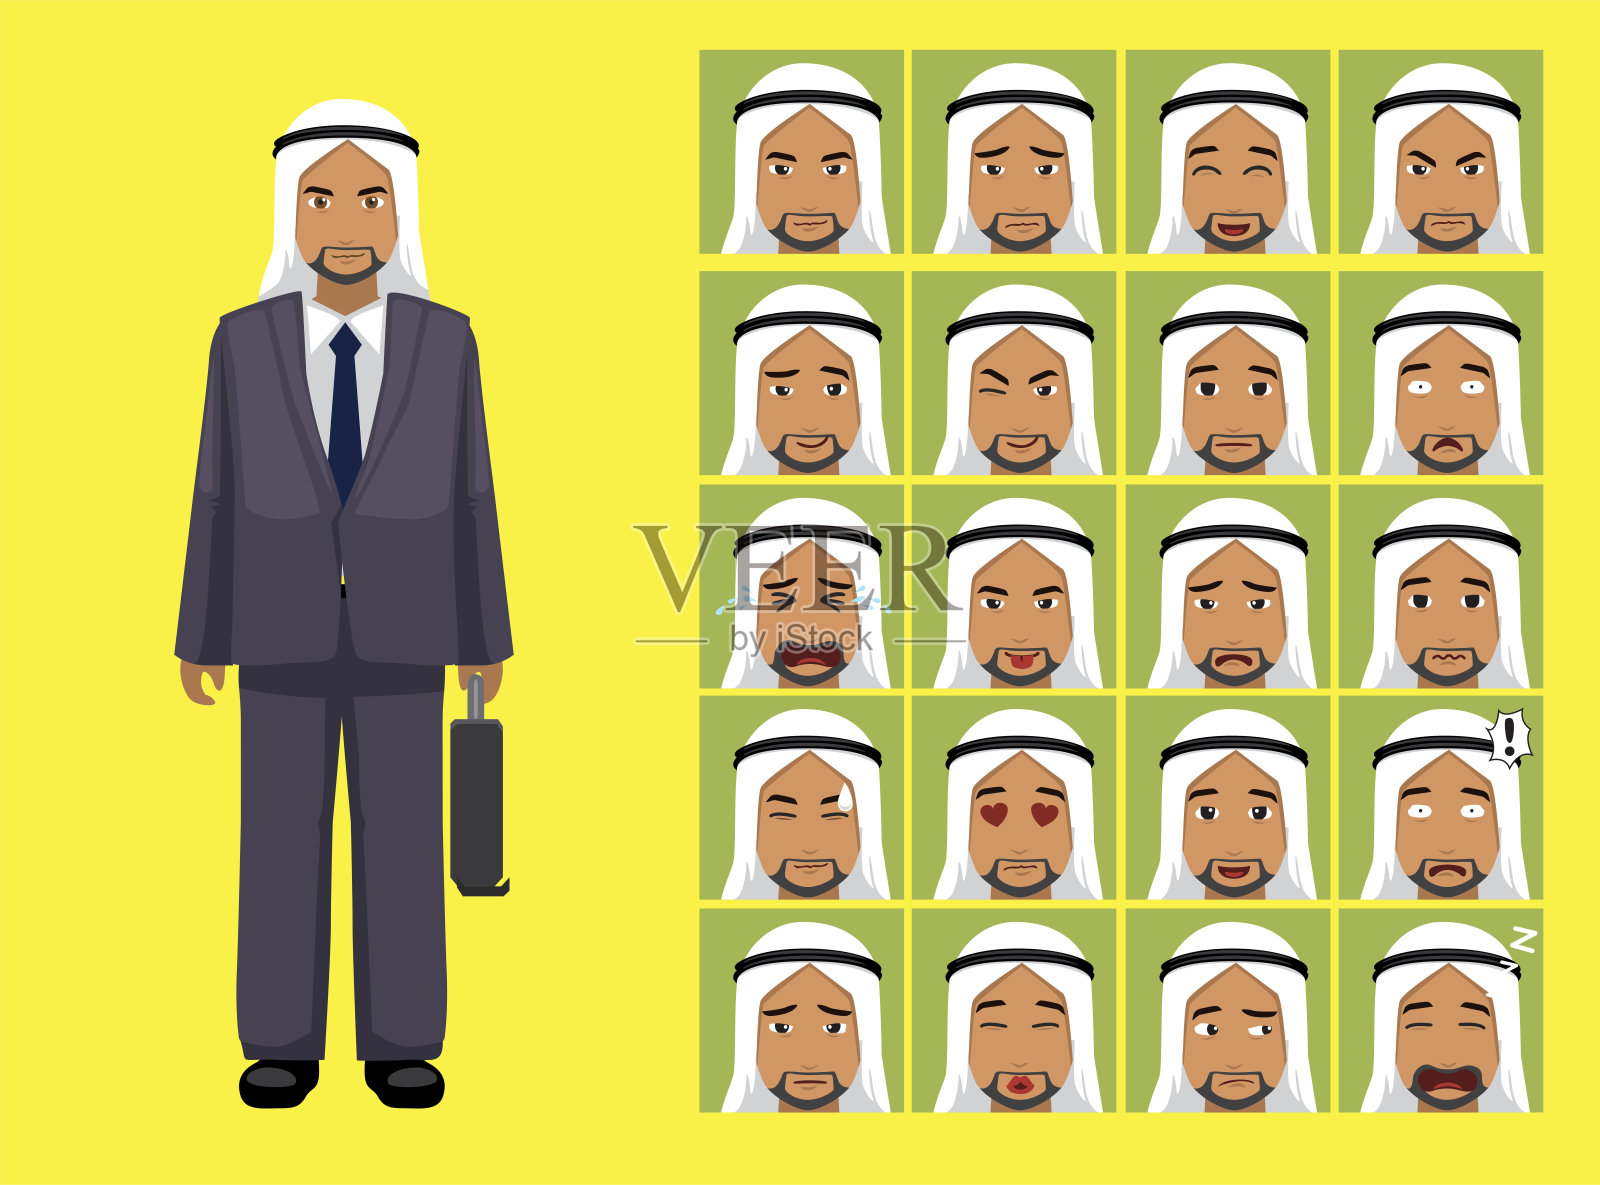 漫画风格商人阿拉伯服装卡通人物情感插画图片素材